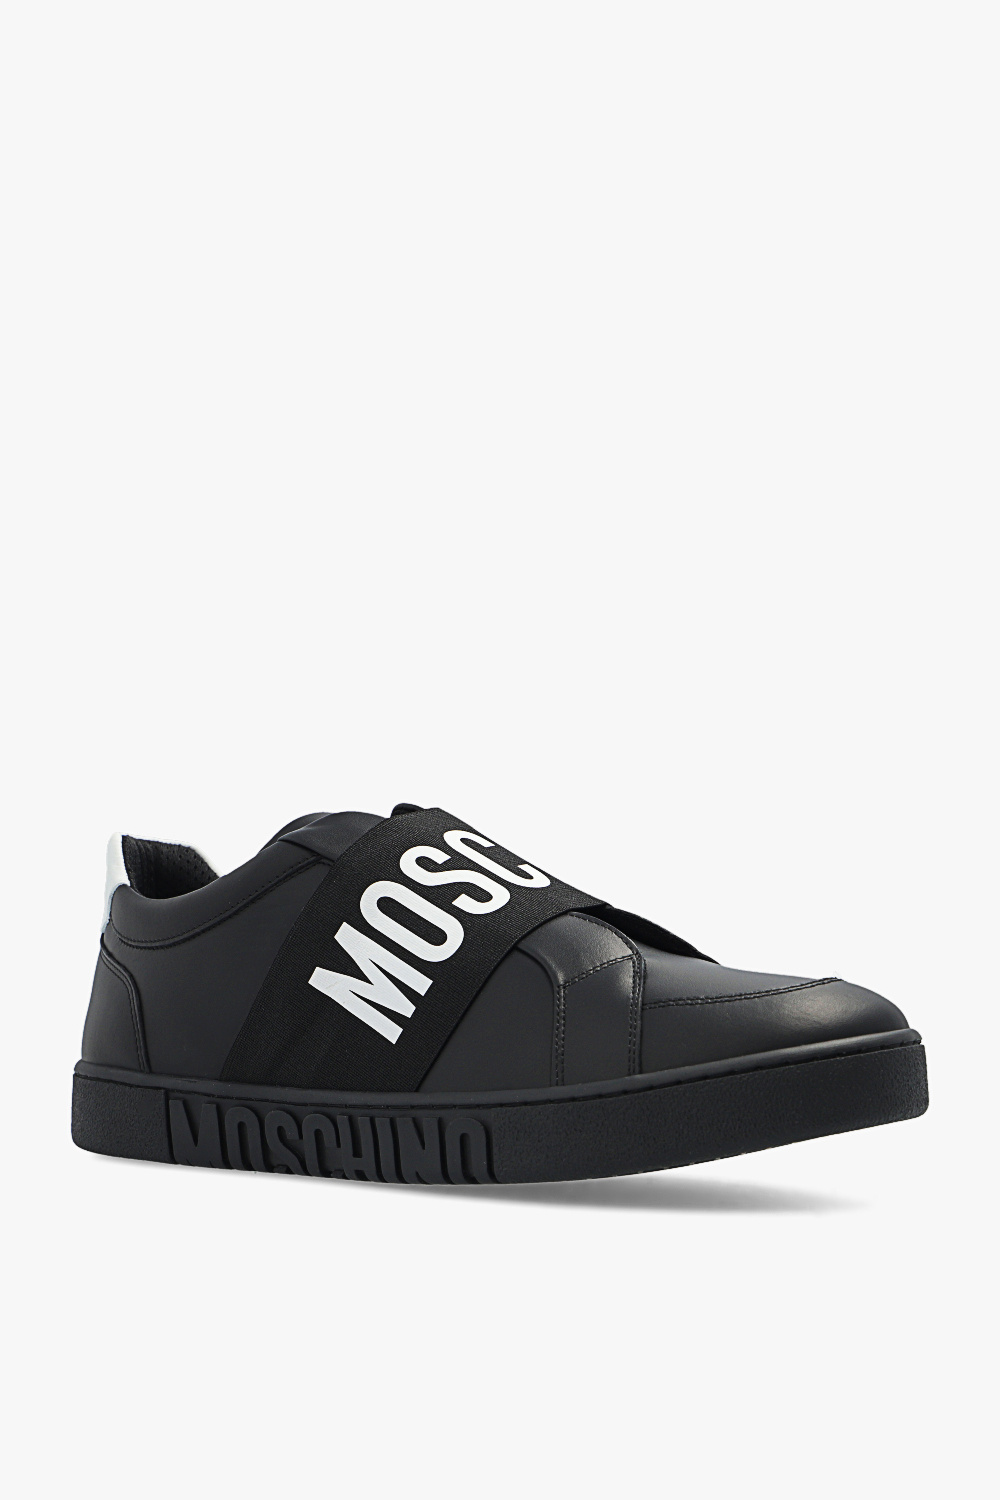 Moschino Best grey sneakers for men